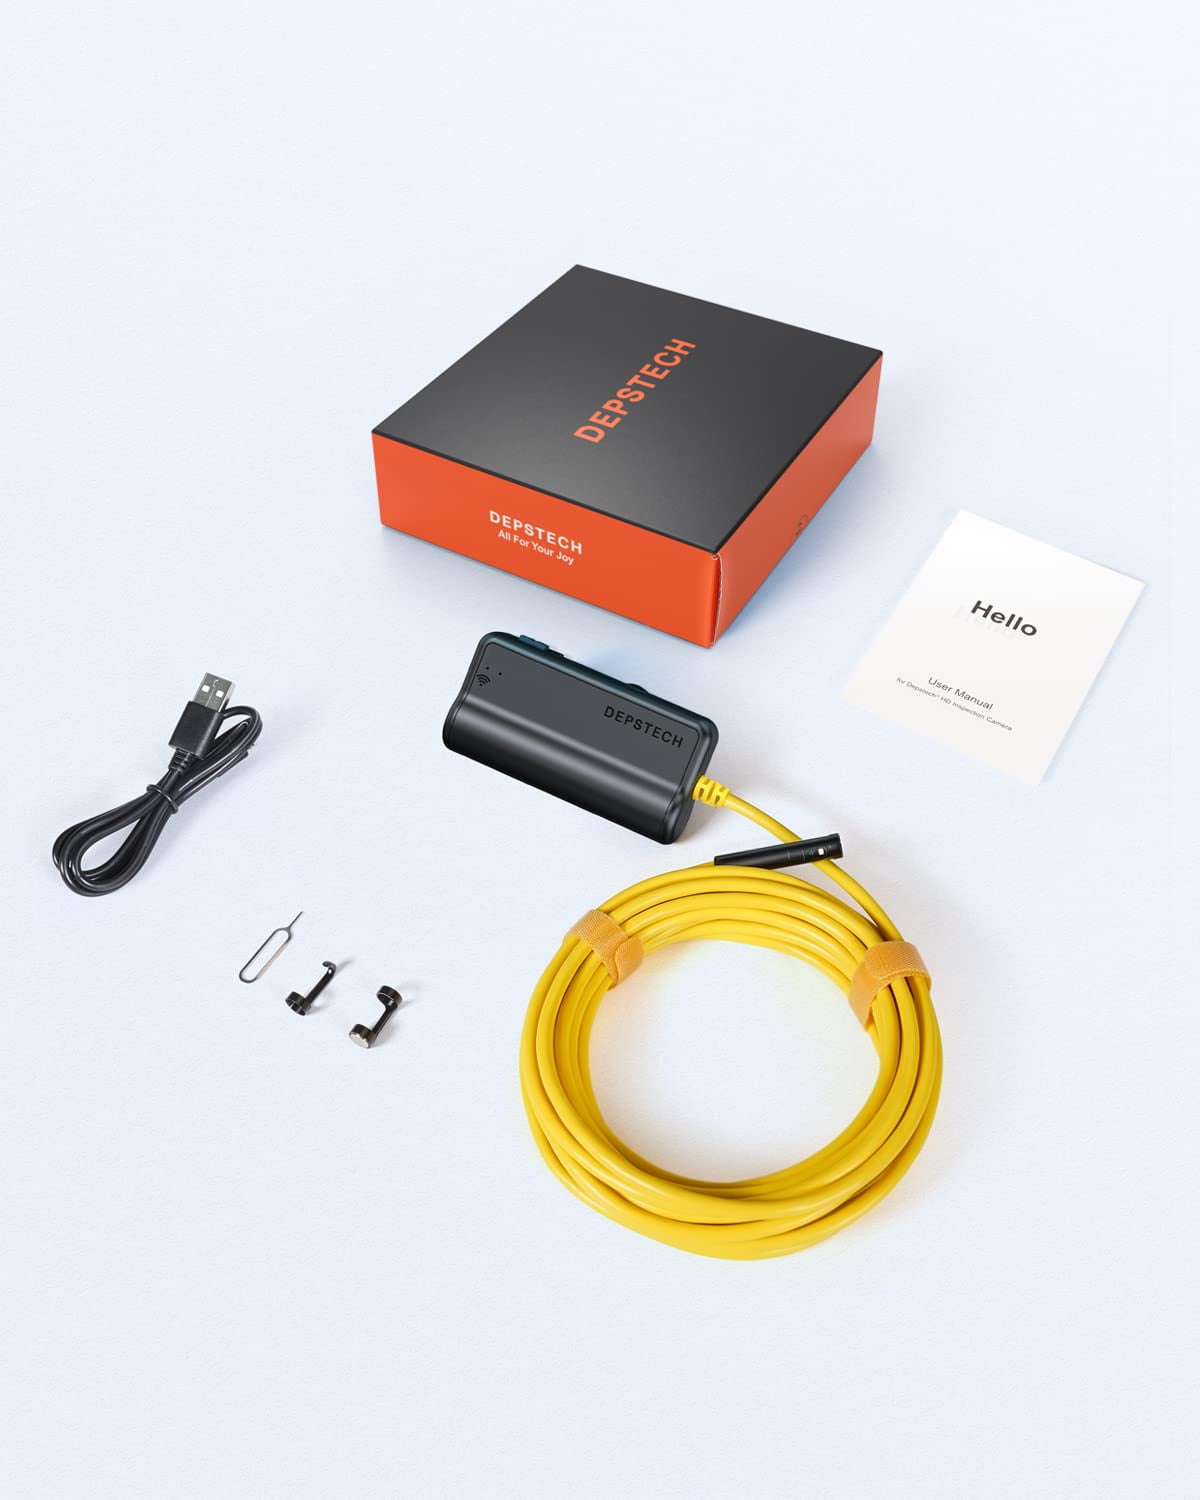 DEPSTECH WF010 Wireless borescope Endoscope 2.0MP HD Snake Camera